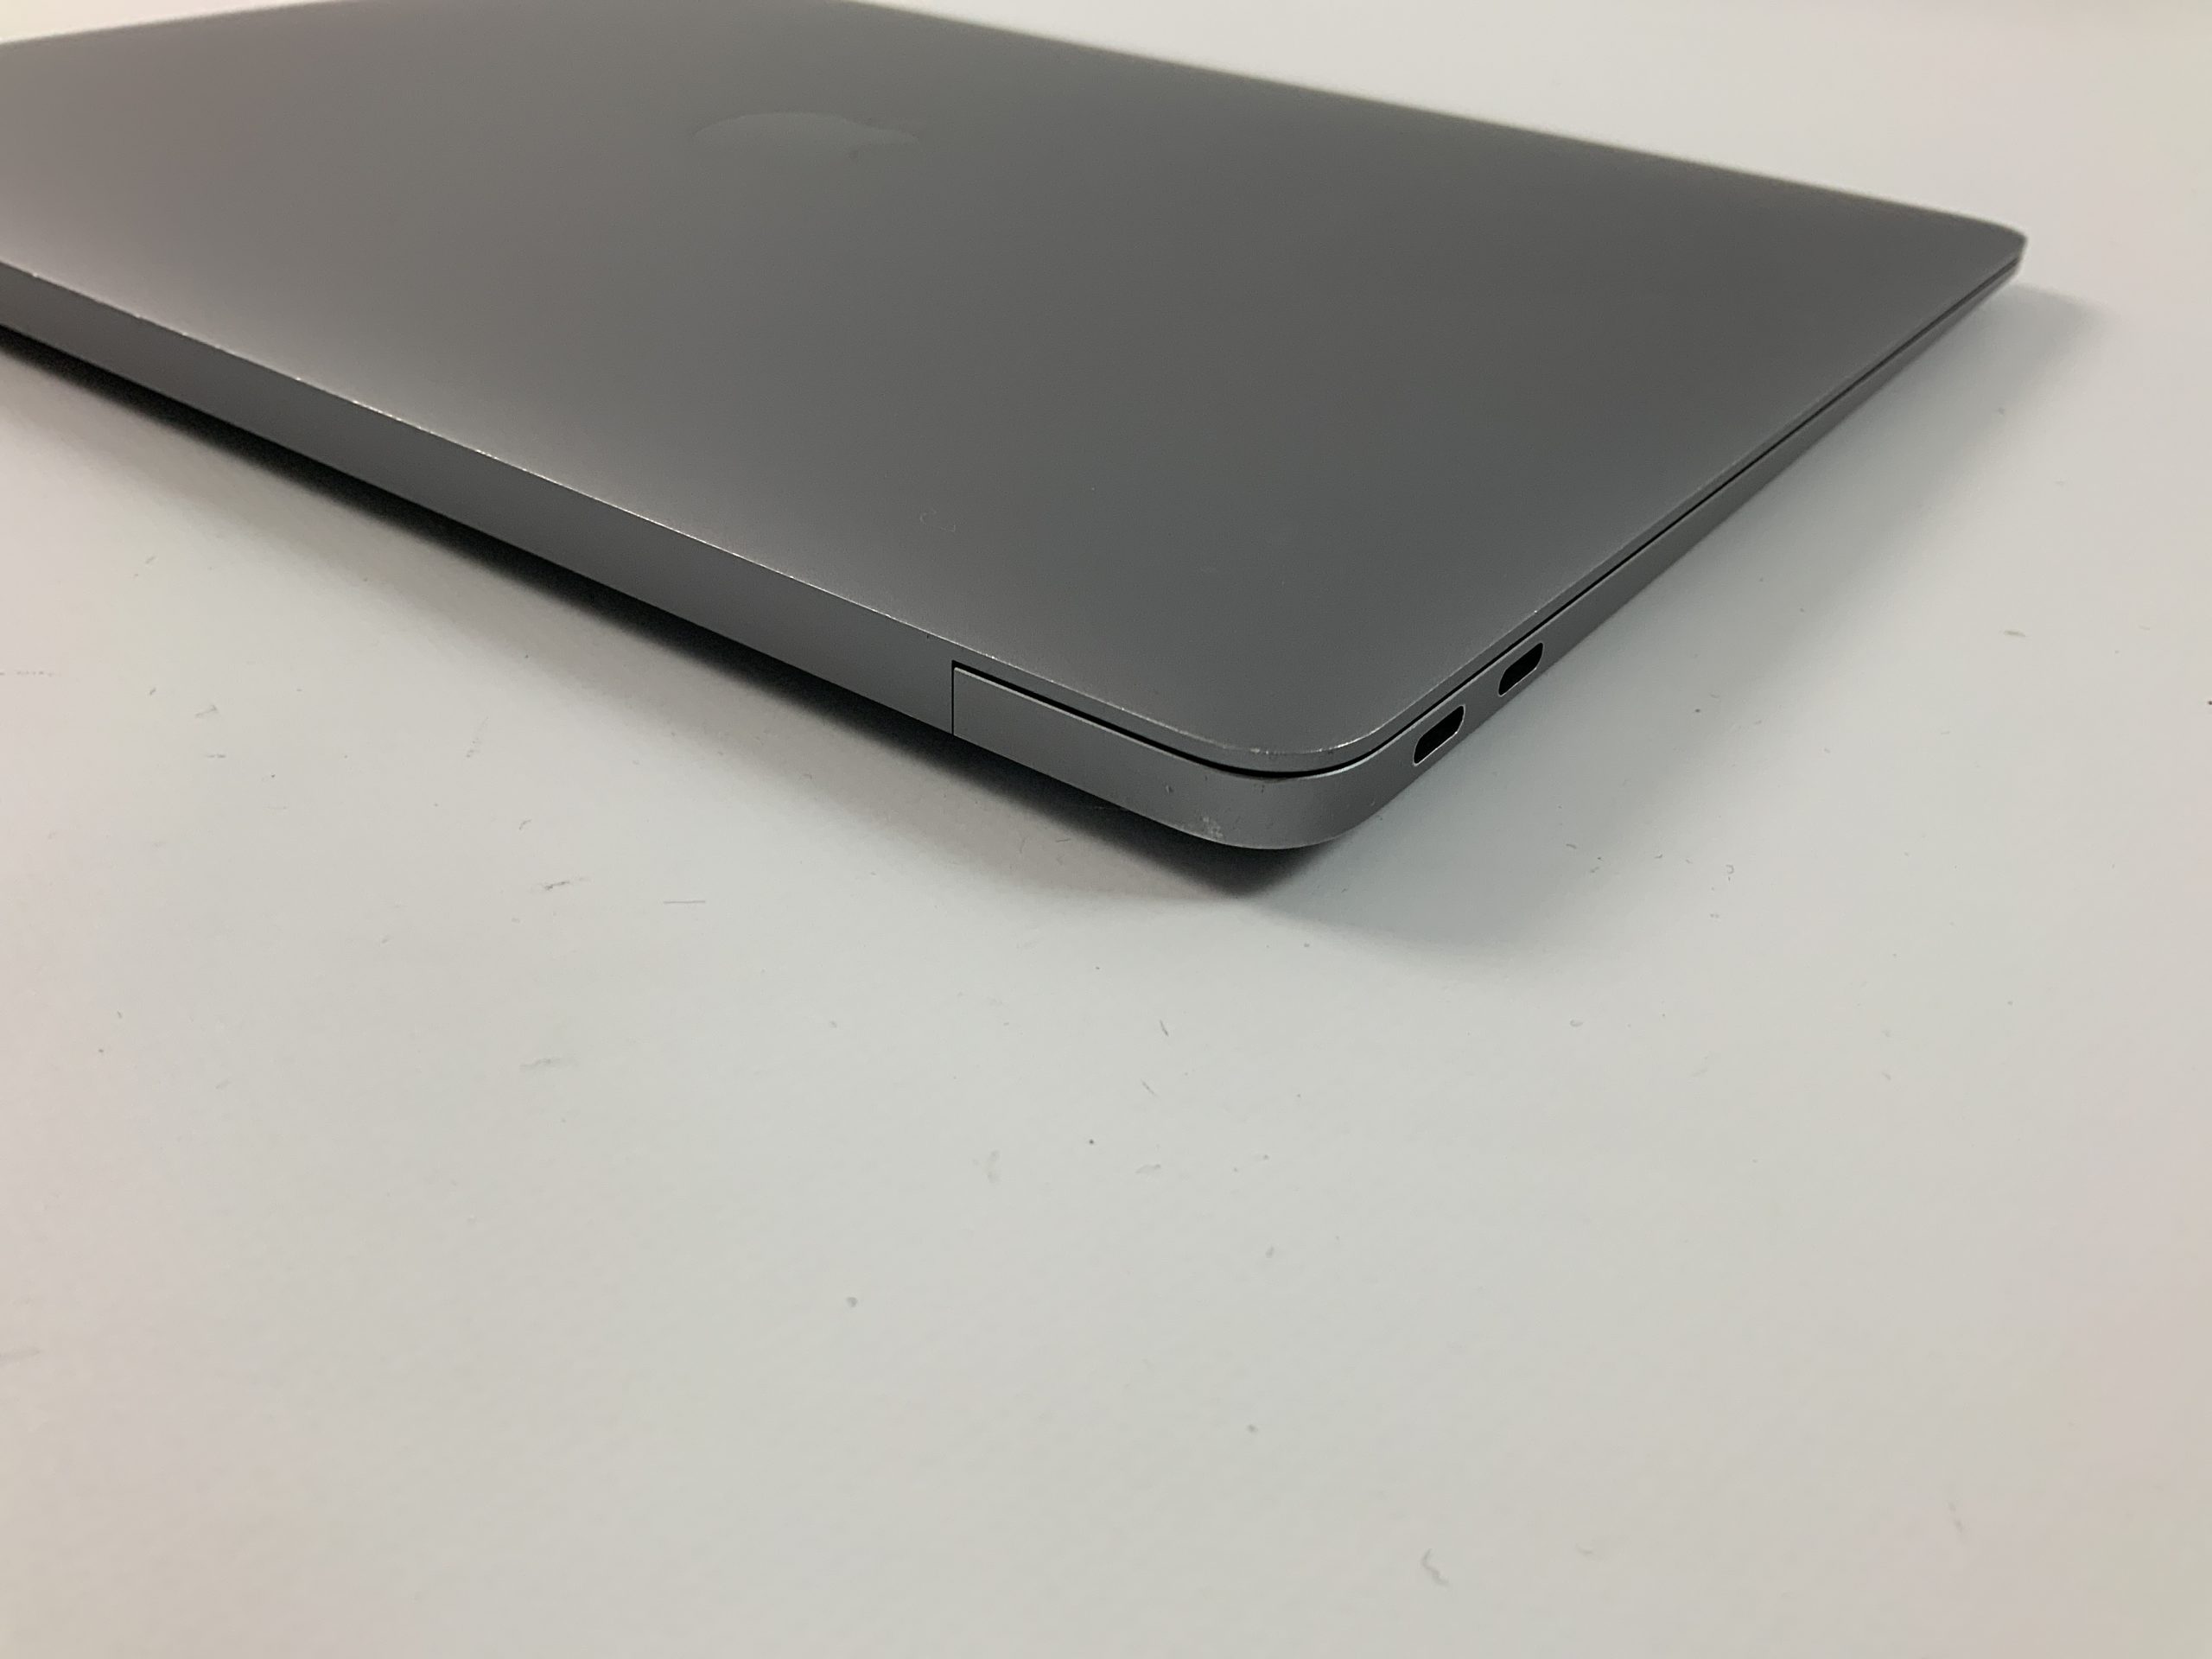 MacBook Air 13" Mid 2019 (Intel Core i5 1.6 GHz 16 GB RAM 128 GB SSD), Space Gray, Intel Core i5 1.6 GHz, 16 GB RAM, 128 GB SSD, image 5